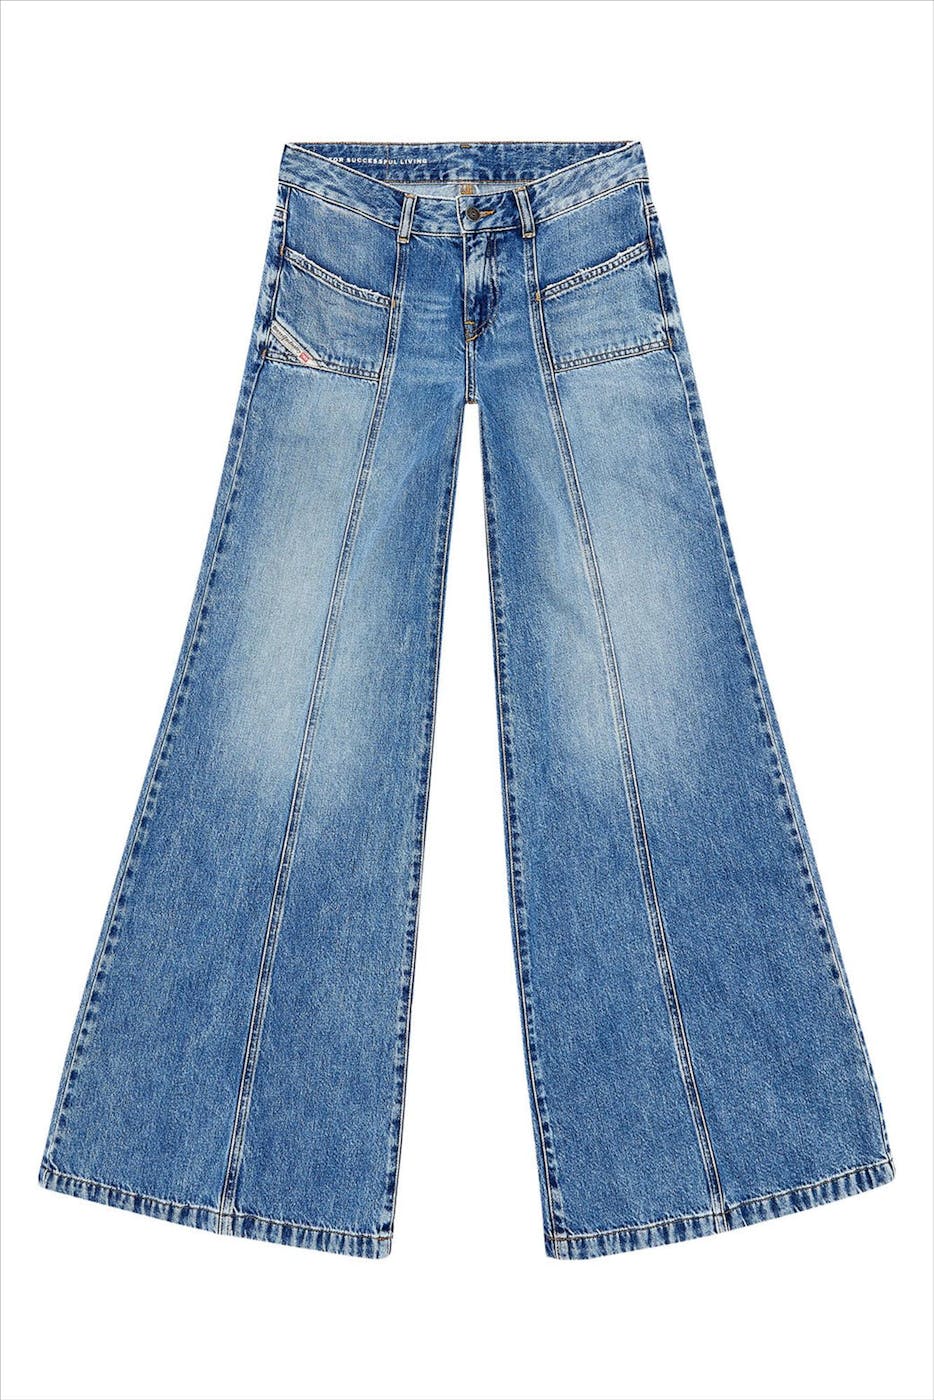 Diesel - Blauwe Akii jeans